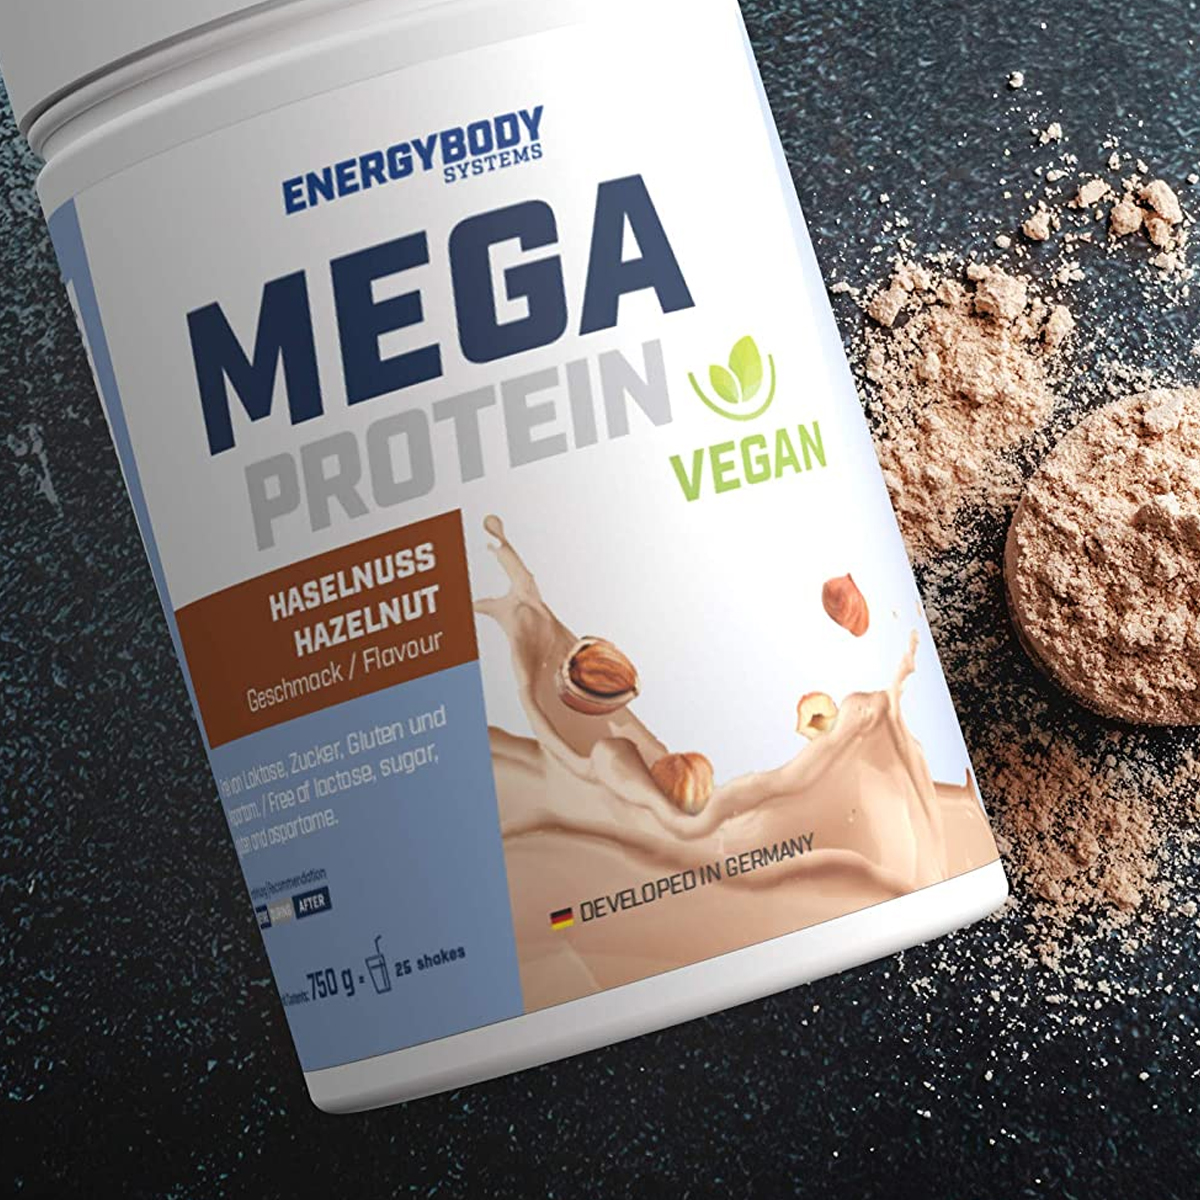 Energybody Systems Протеин Веган, Mega Protein Vegan 750 гр